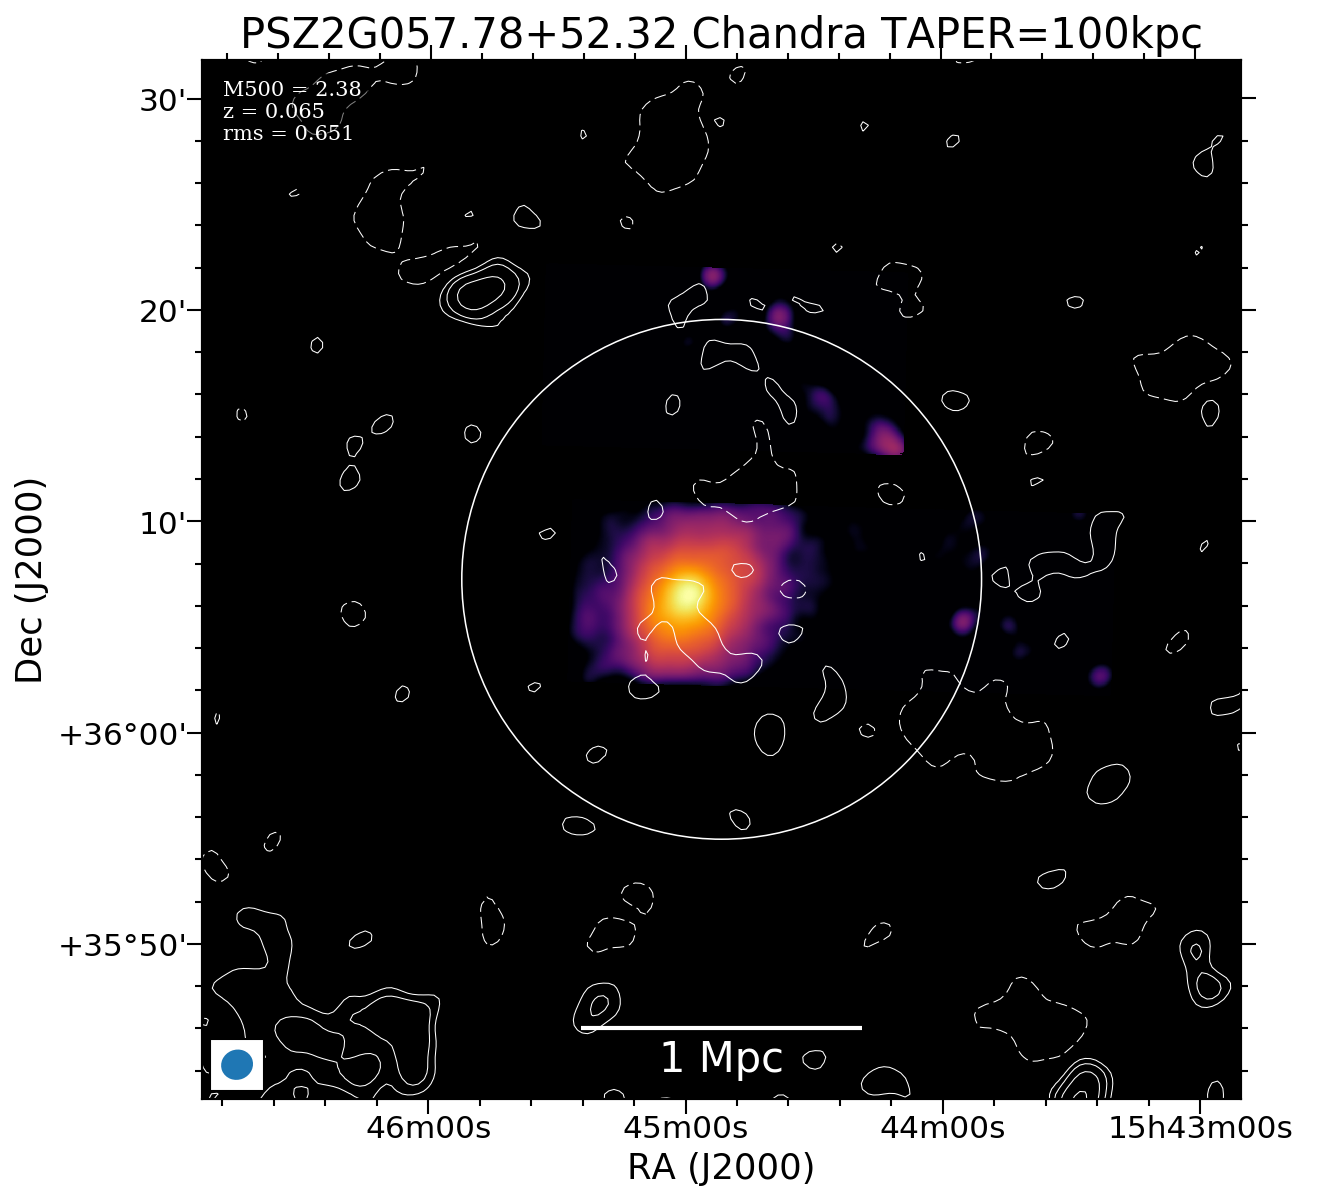 No Chandra data available